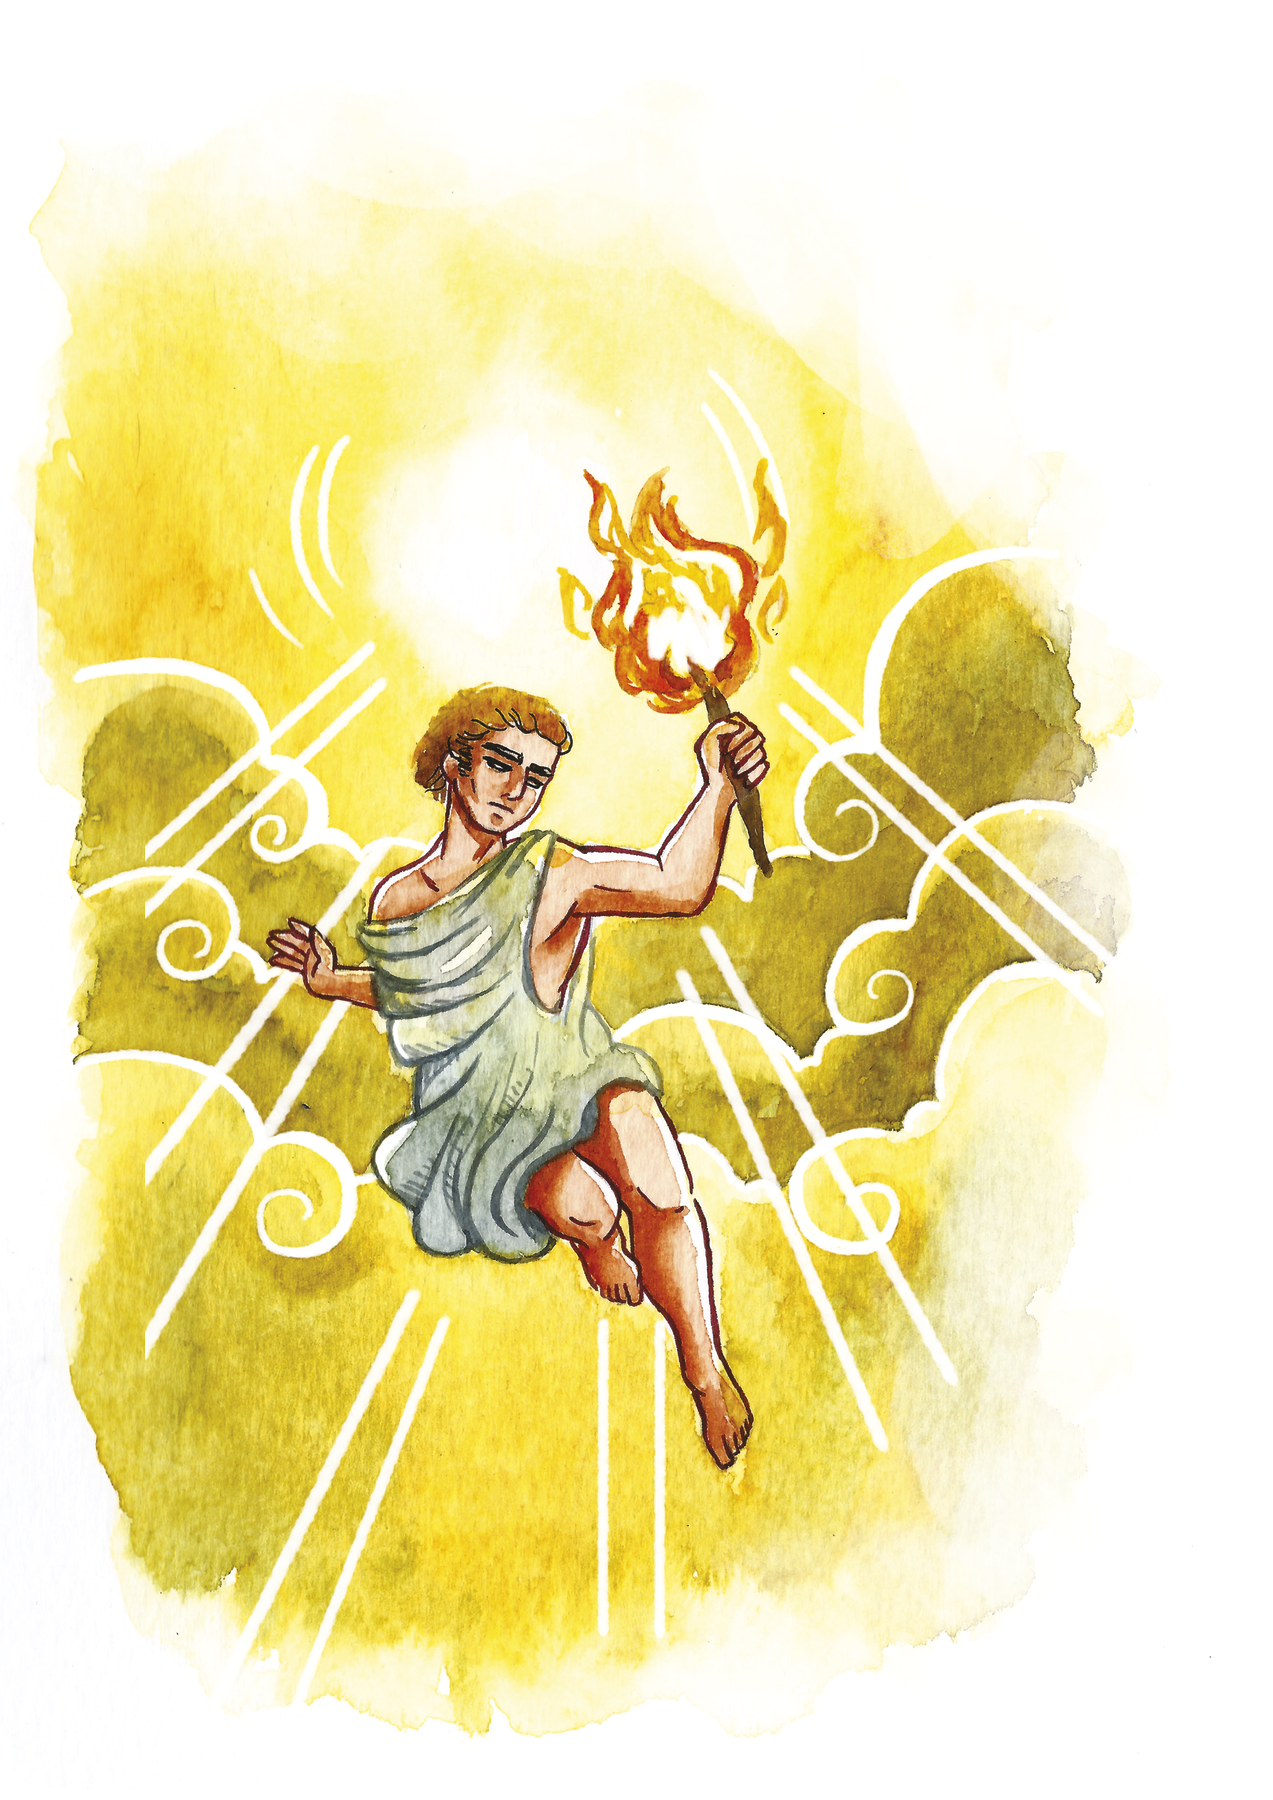 Ilustração. A imagem destaca o personagem Prometeu, representado por um homem com cabelos ruivos e usando um tecido ao redor do corpo. Ele está flutuando entre as nuvens, segurando, com a mão esquerda, uma tocha acesa. Atrás dele, o sol ilumina tudo.